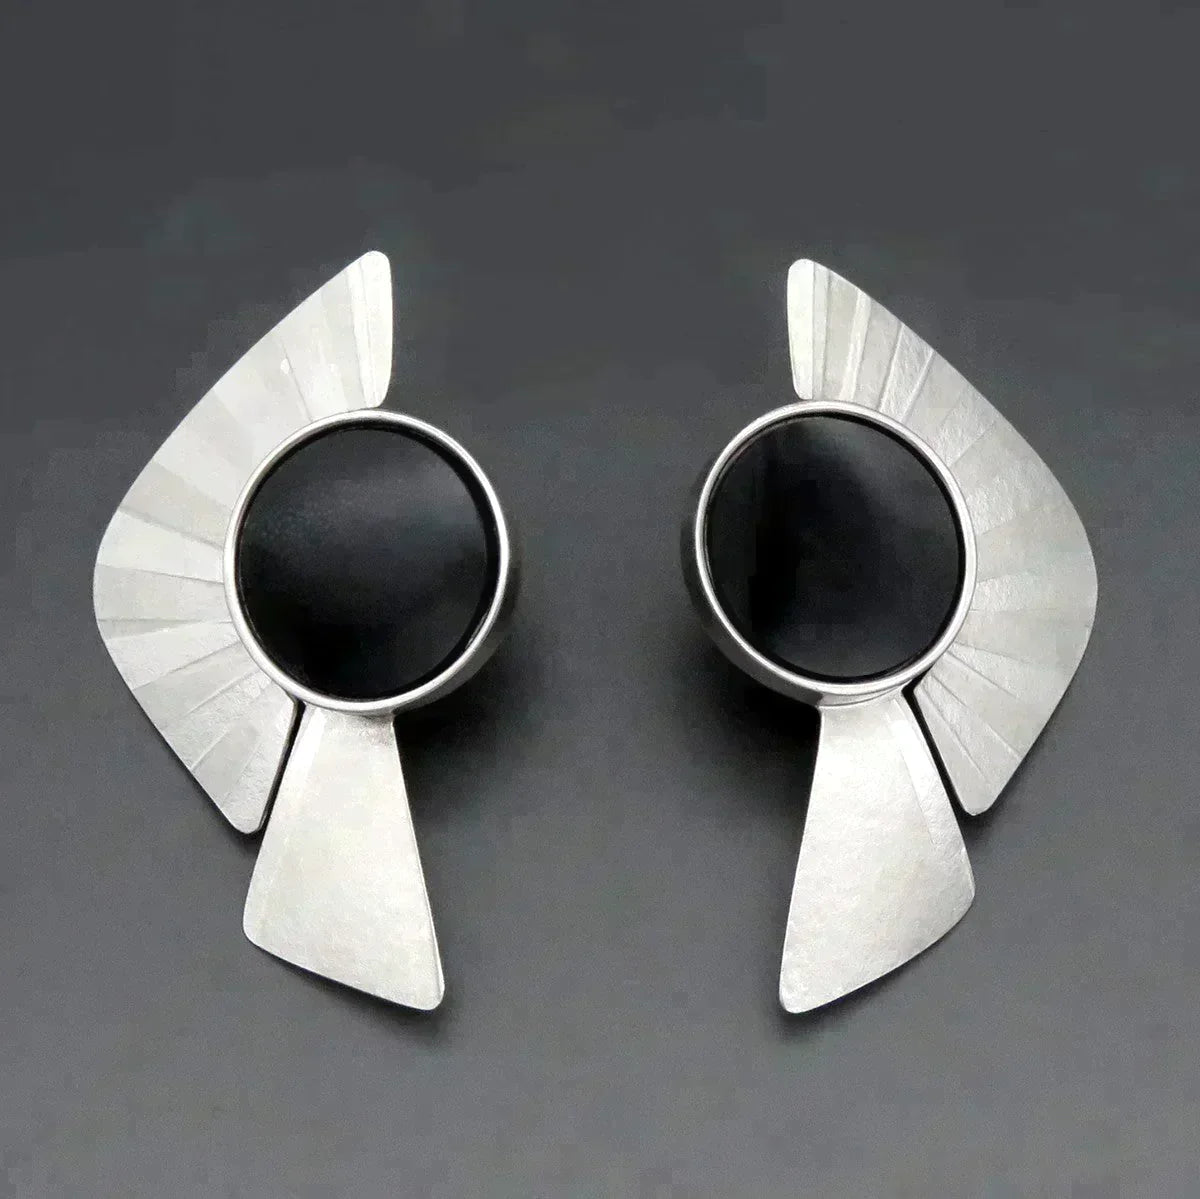 Handcrafted Sterling Silver Onyx Stone Fan Form Geometric Statement Earrings 2"